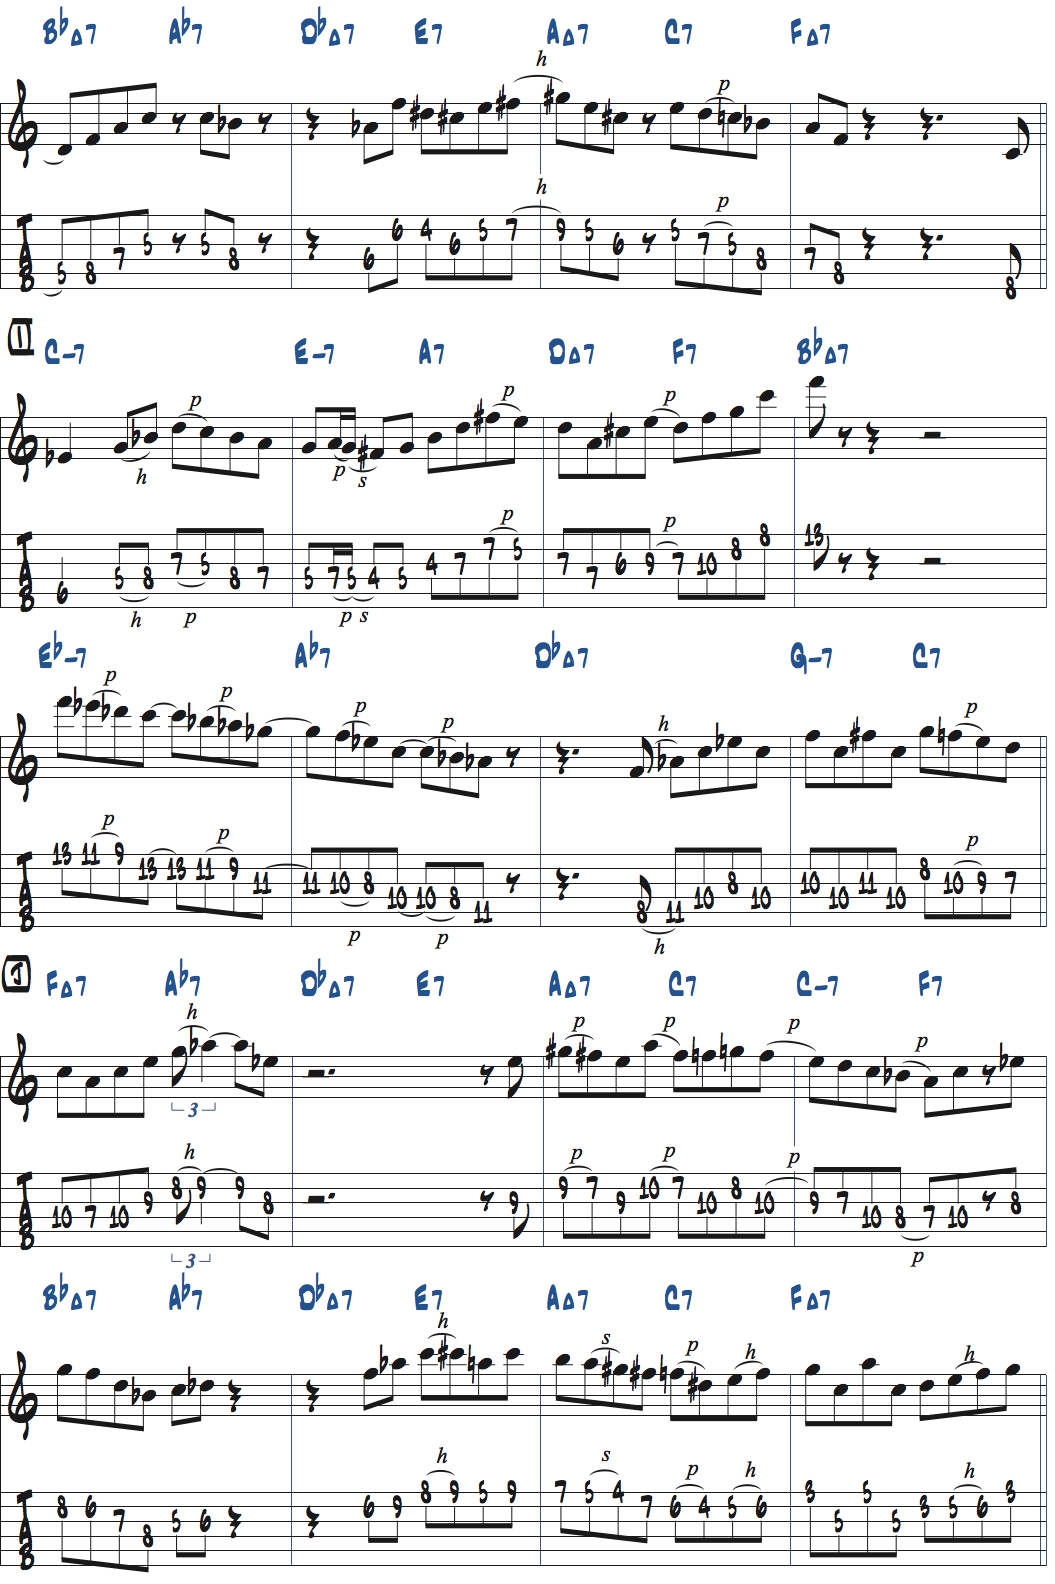 カート・ローゼンウィンケル「26-2」アドリブ2コラース目タブ譜付きギタースコア楽譜ページ2